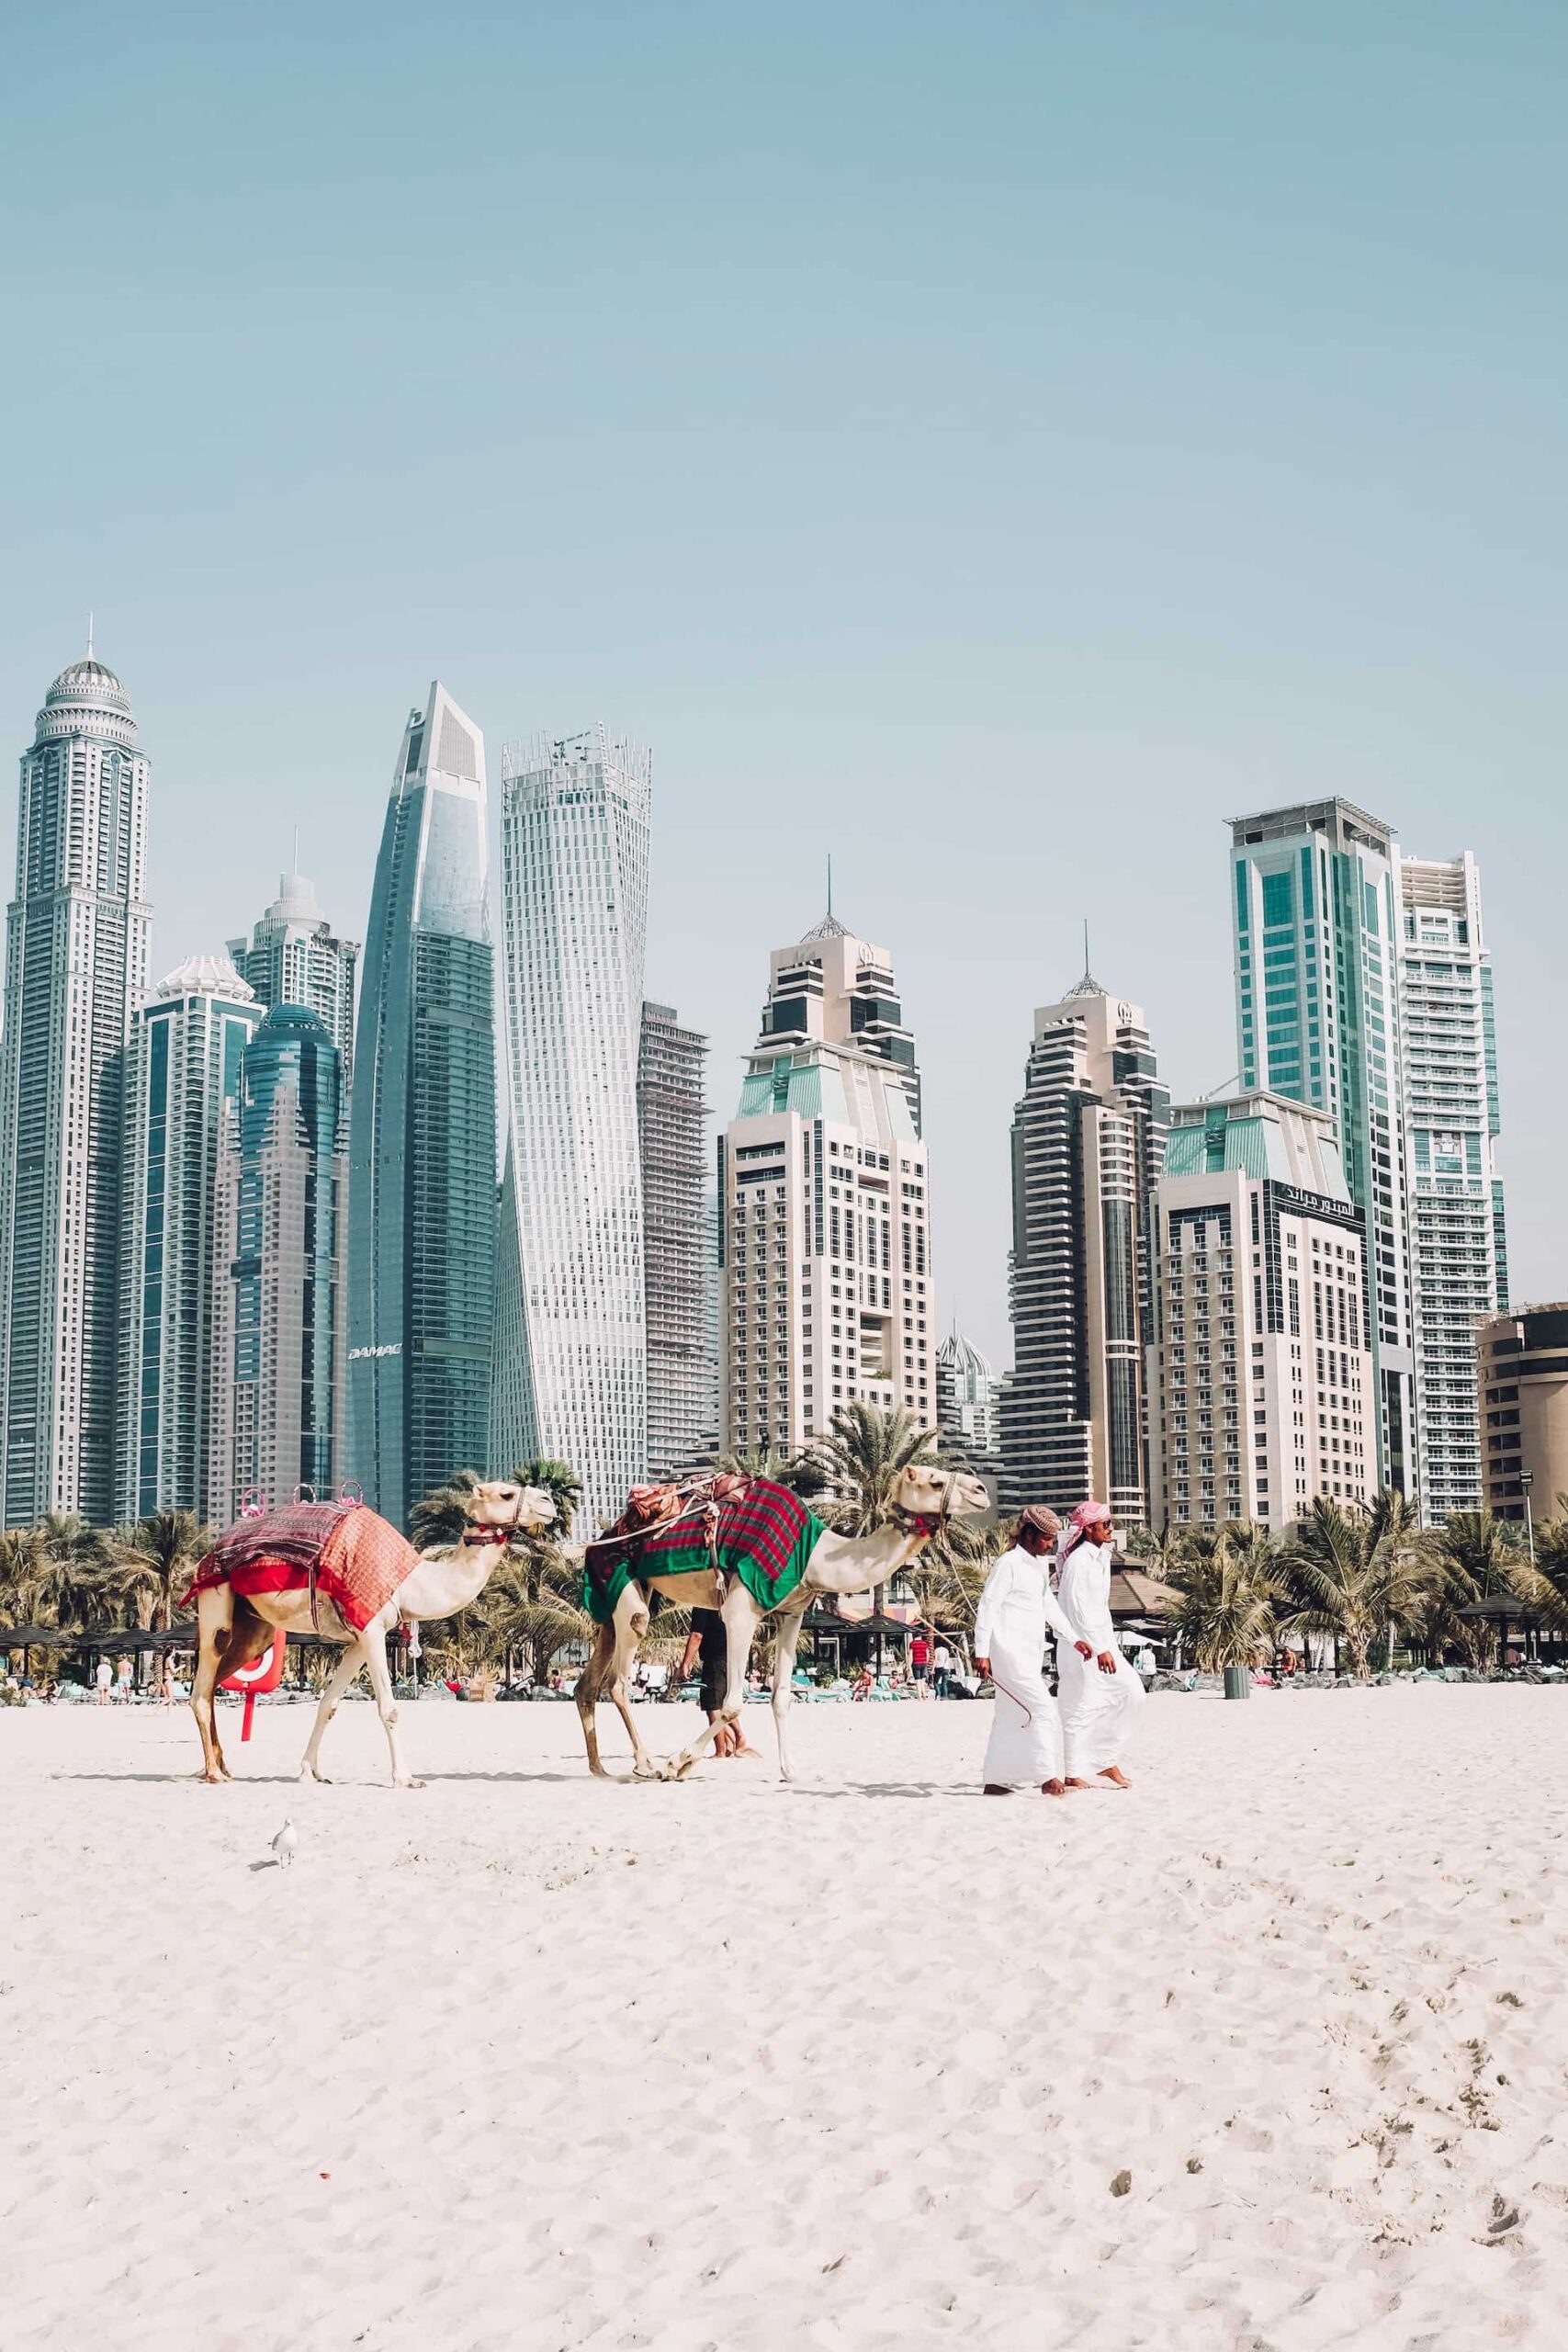 Dubai, UAE: The Oasis of Modern Architecture and Futuristic Skyline,